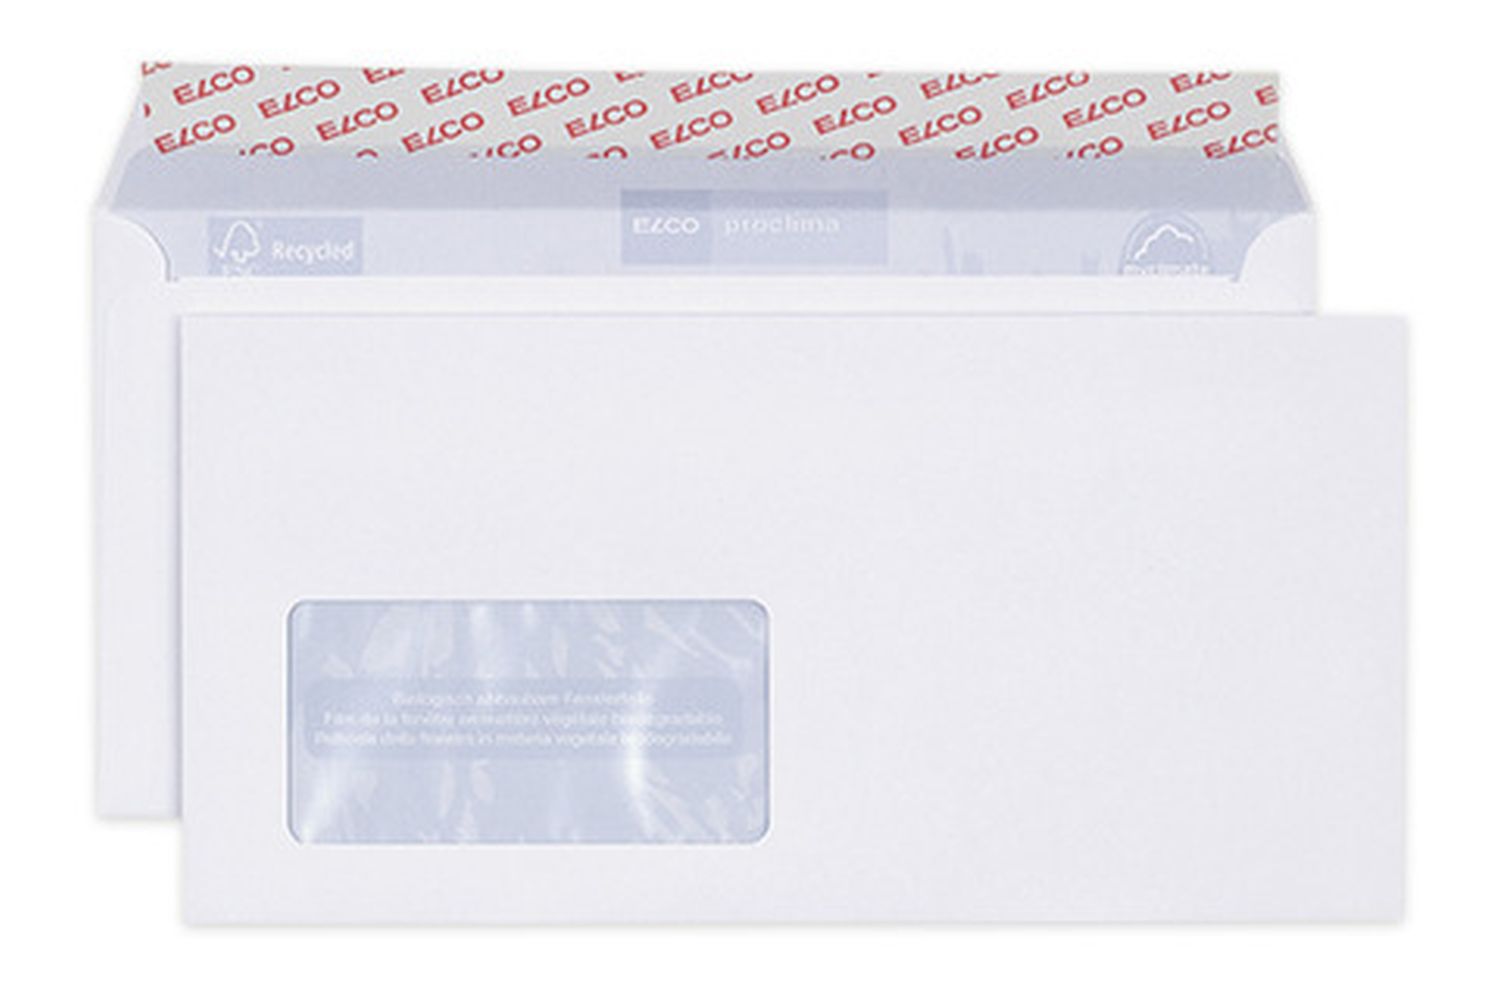 Briefumschläge Proclima Elco 38779, C5/6 DIN lang, hochweiß, Haftklebung, 100 g/qm, 500 Stück Box